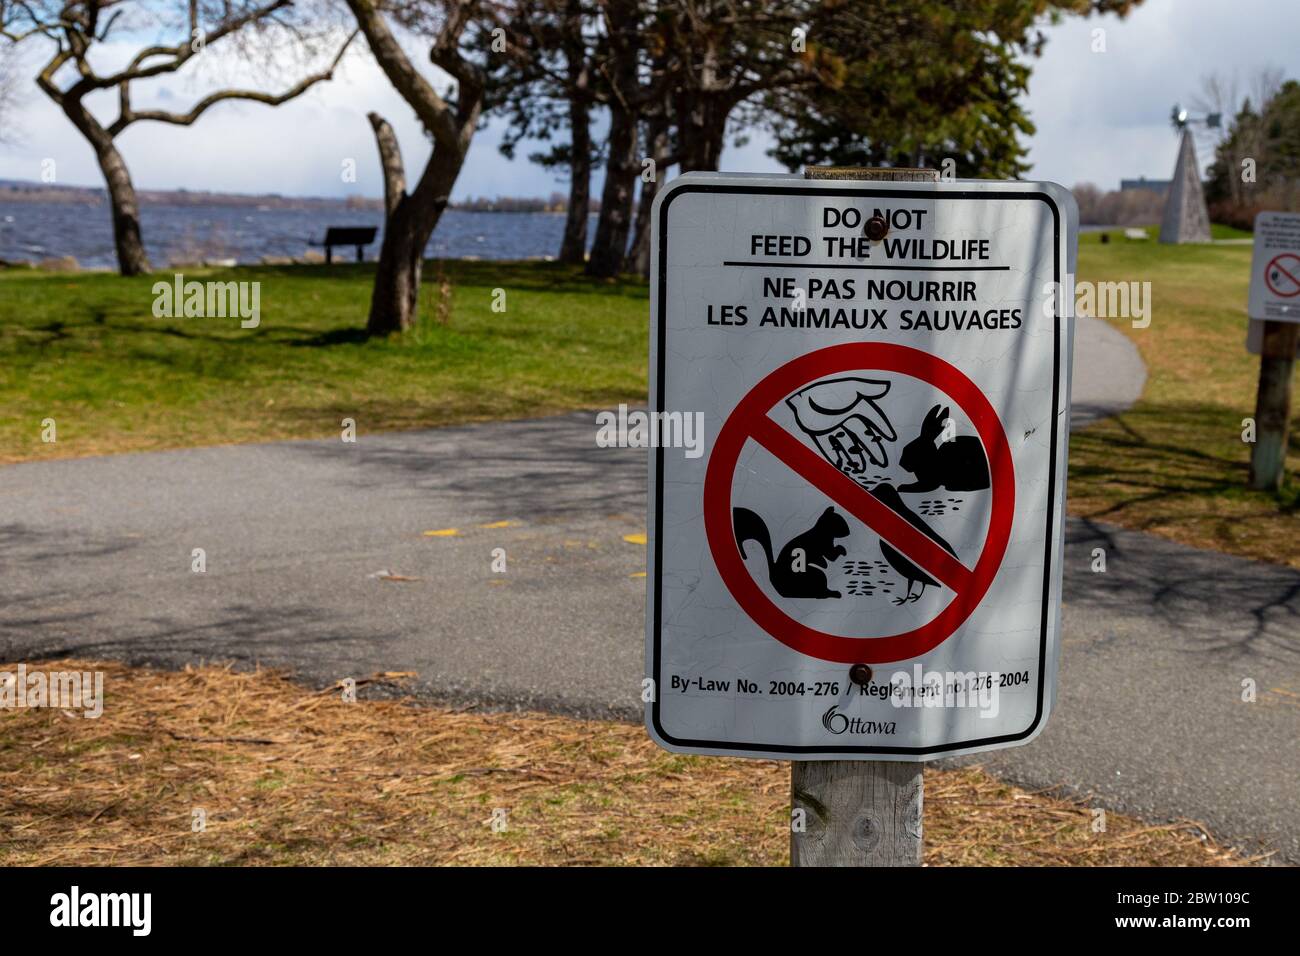 OTTAWA, ONTARIO, CANADA - 9 MAGGIO 2020: Un cartello bilingue sulla legge della città informa i visitatori in inglese e francese di non dare da mangiare alla fauna selvatica nel parco Andrew Haydon. Foto Stock